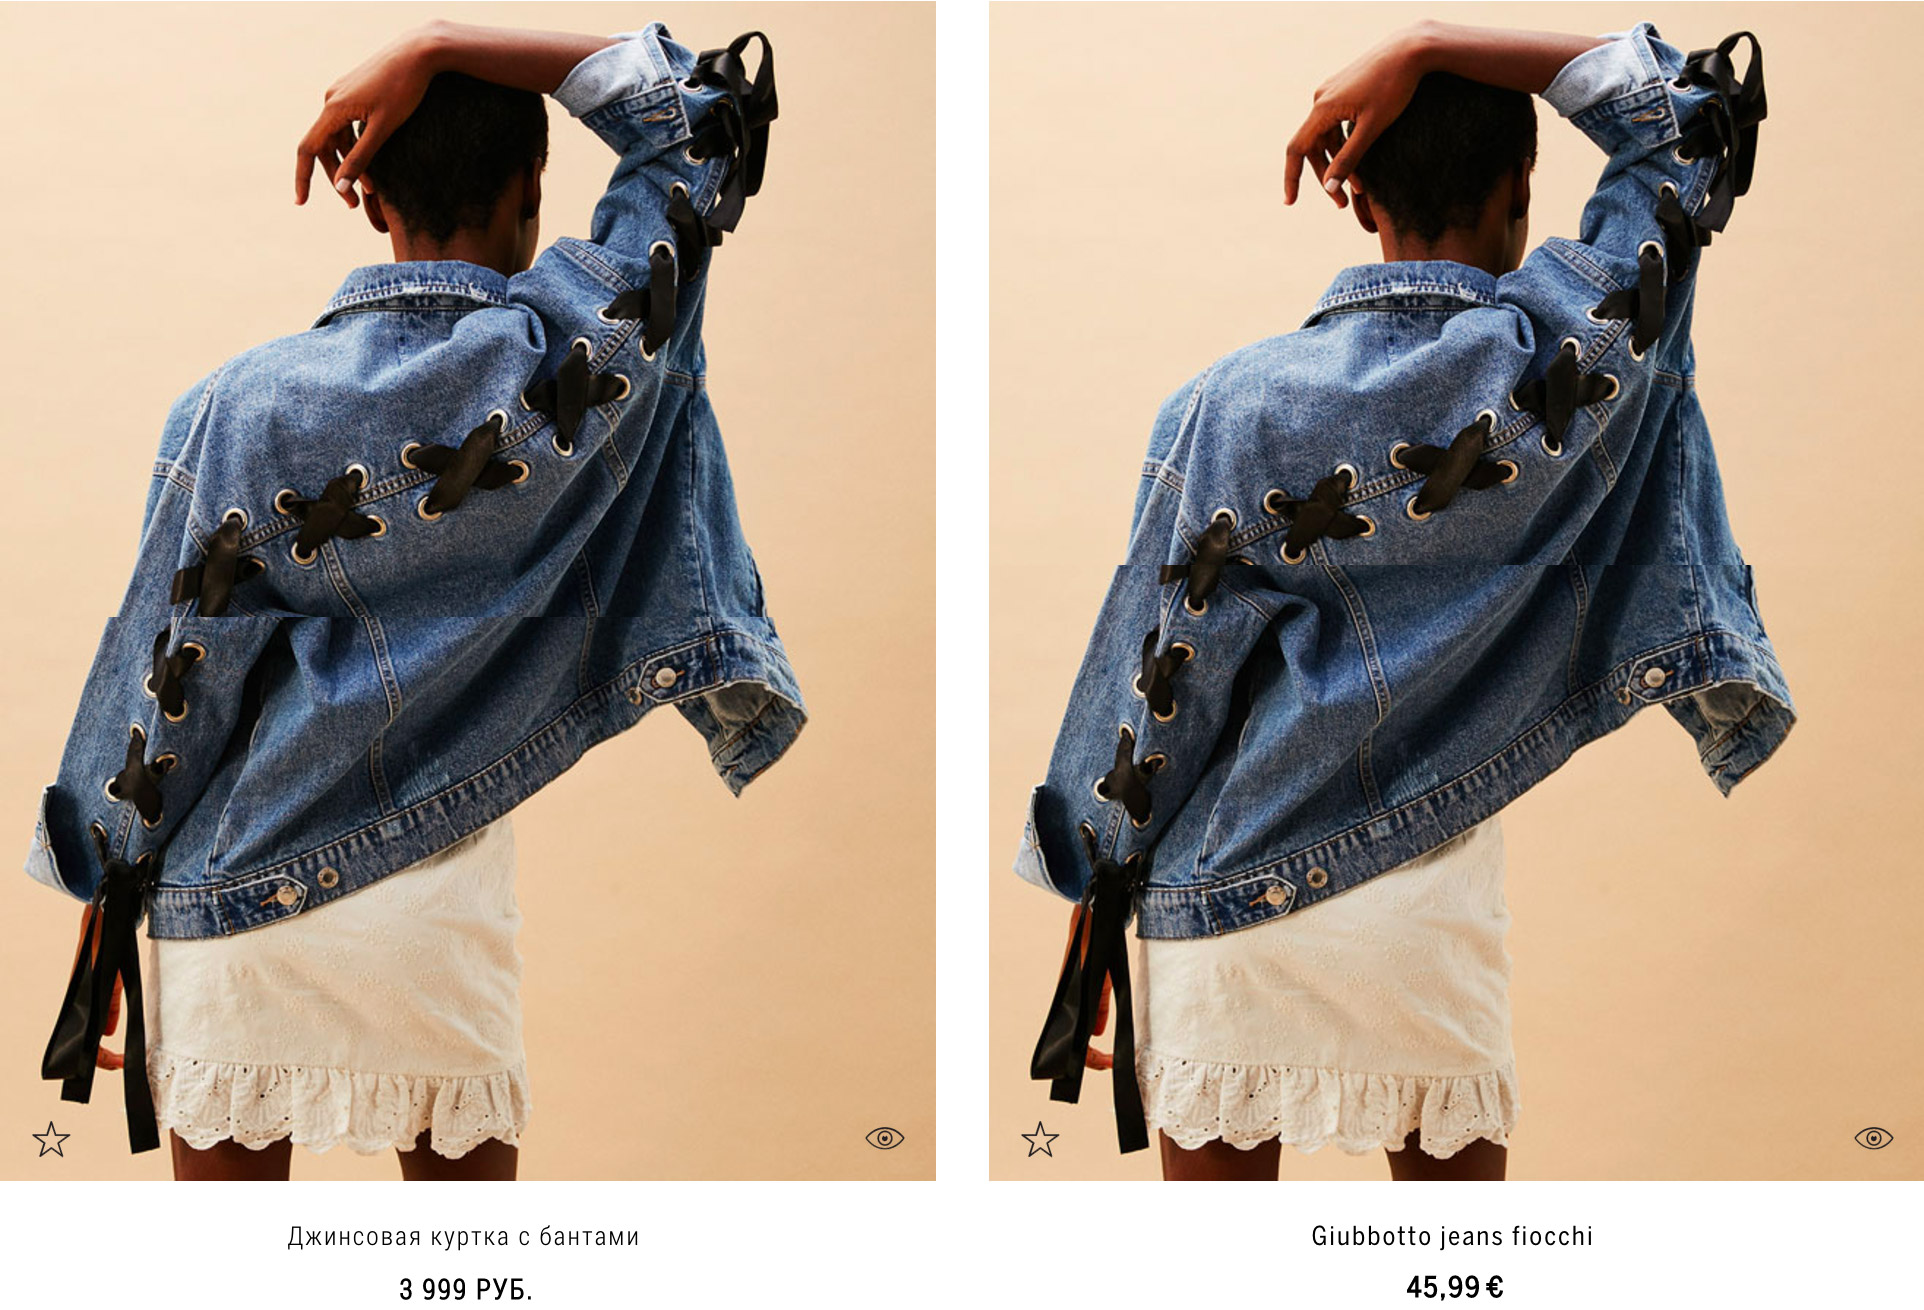 Одна и та же куртка на российском сайте «Бершки» стоит на 1100 ₽ дороже, чем на итальянском (45,99 € = 2800 ₽)